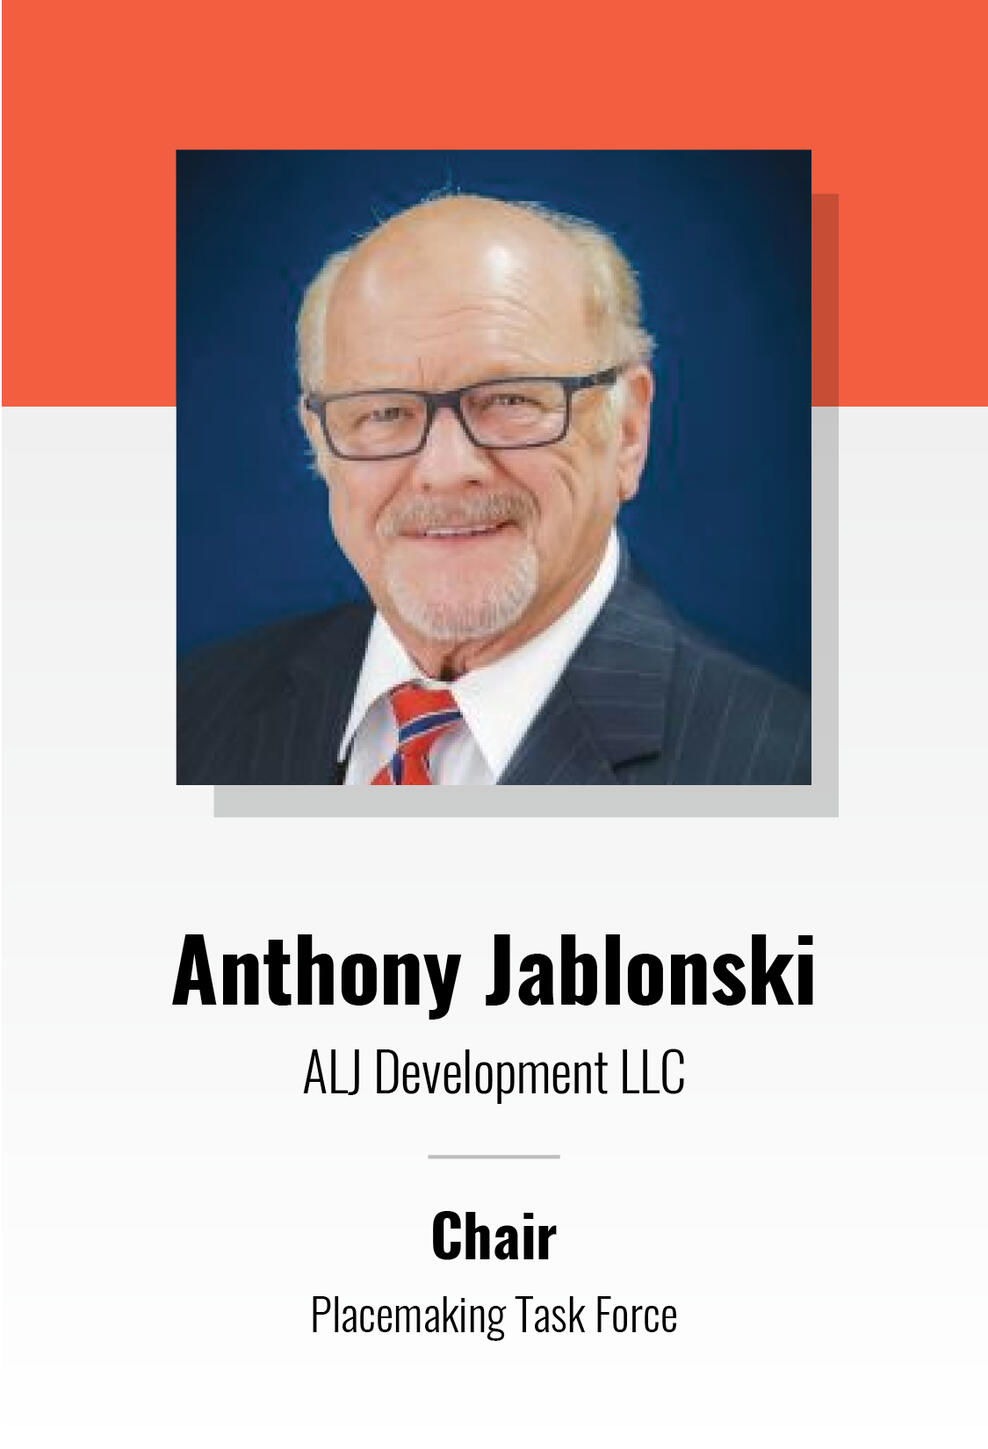 Anthony jablonski